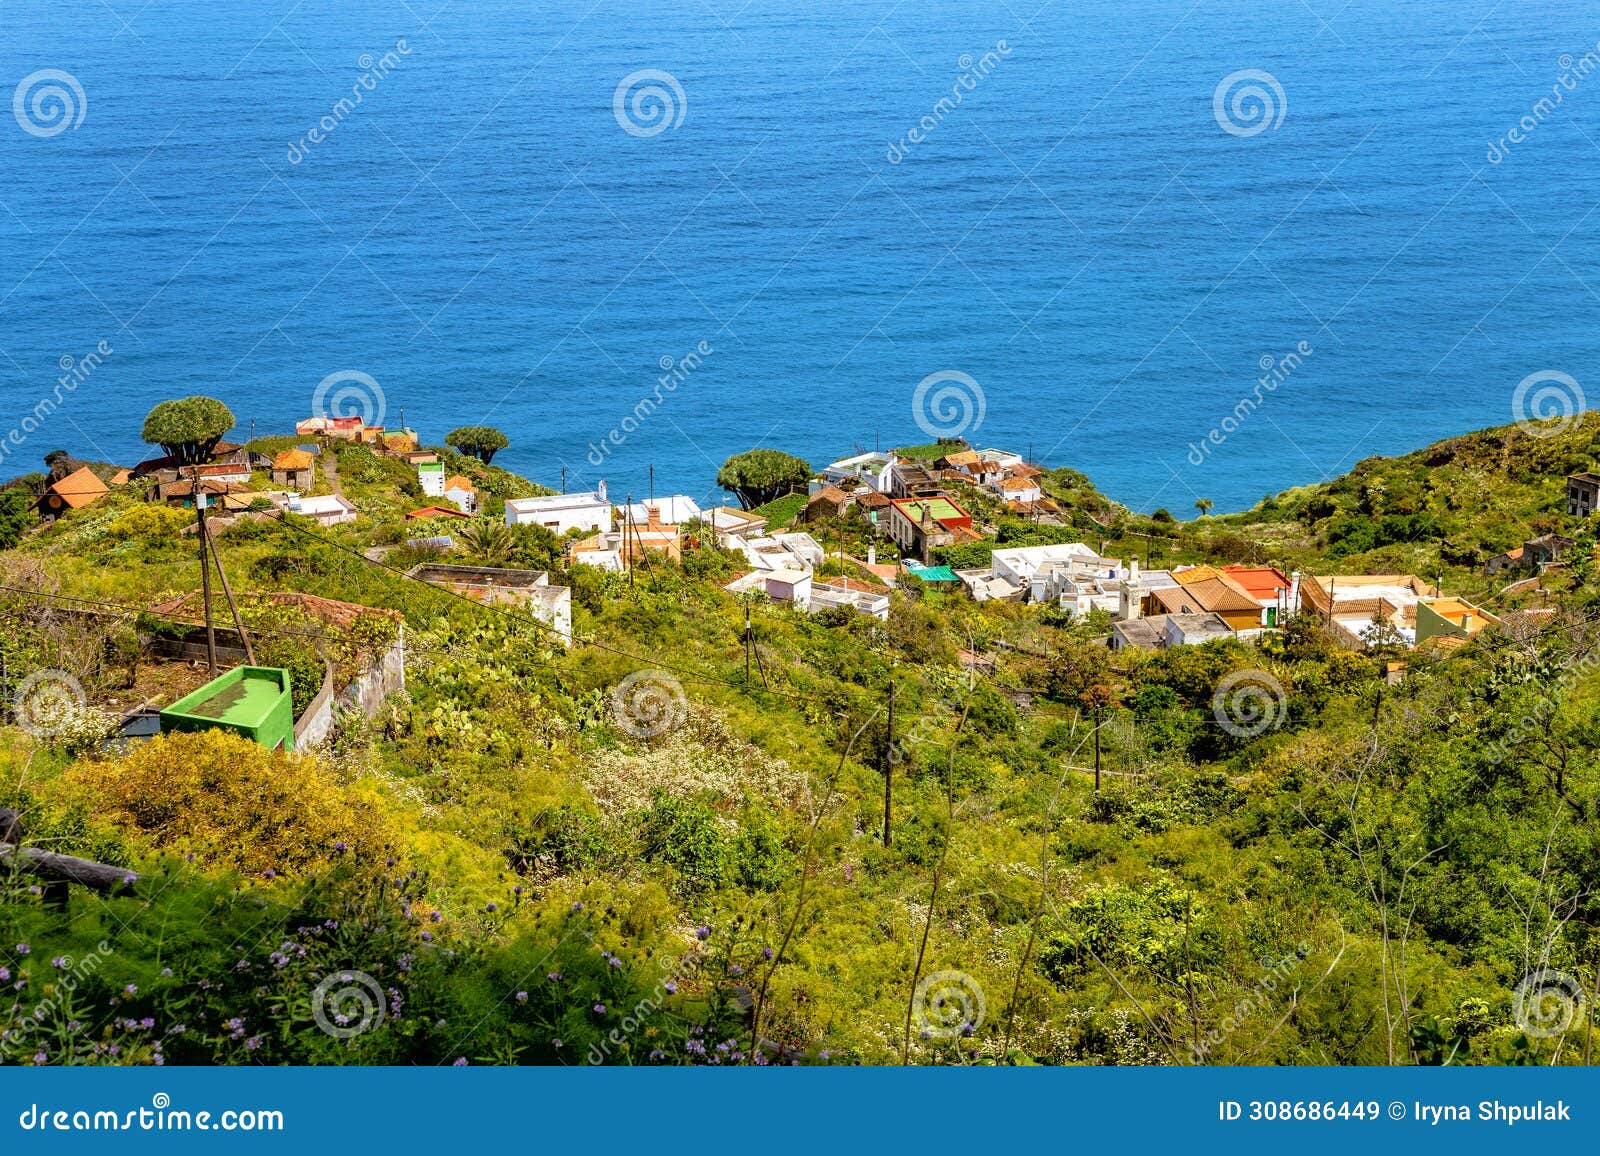 village el tablado, island la palma, canary islands, spain, europe